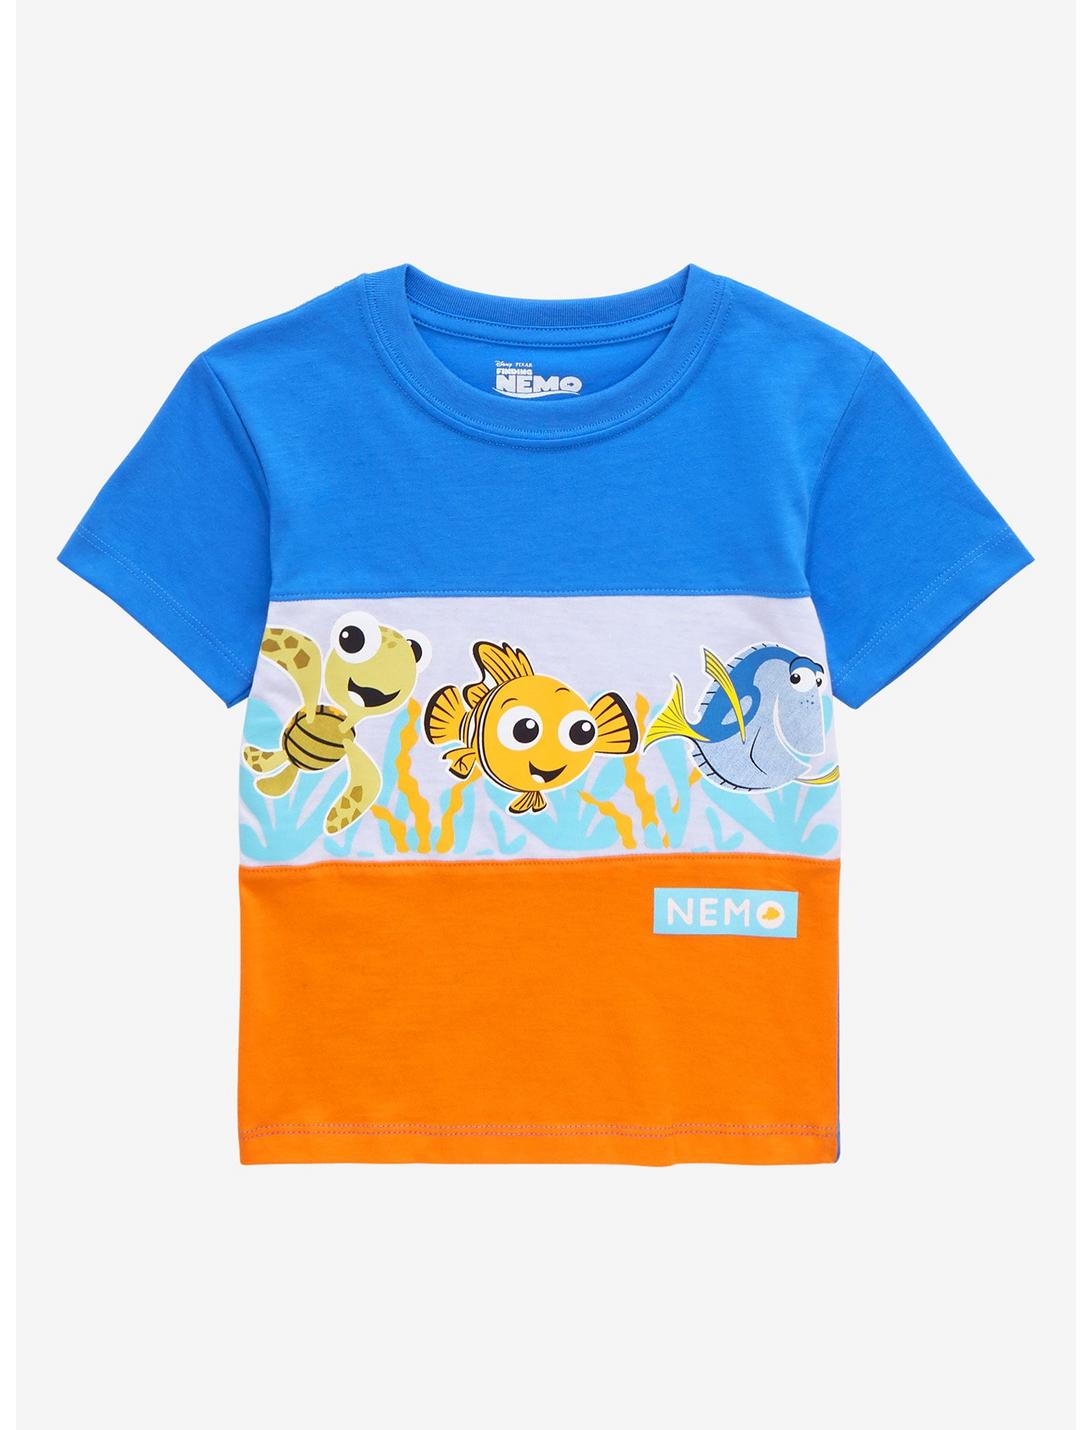 Disney Pixar Finding Nemo Chibi Panel Toddler T-Shirt - BoxLunch Exclusive, MULTI, hi-res